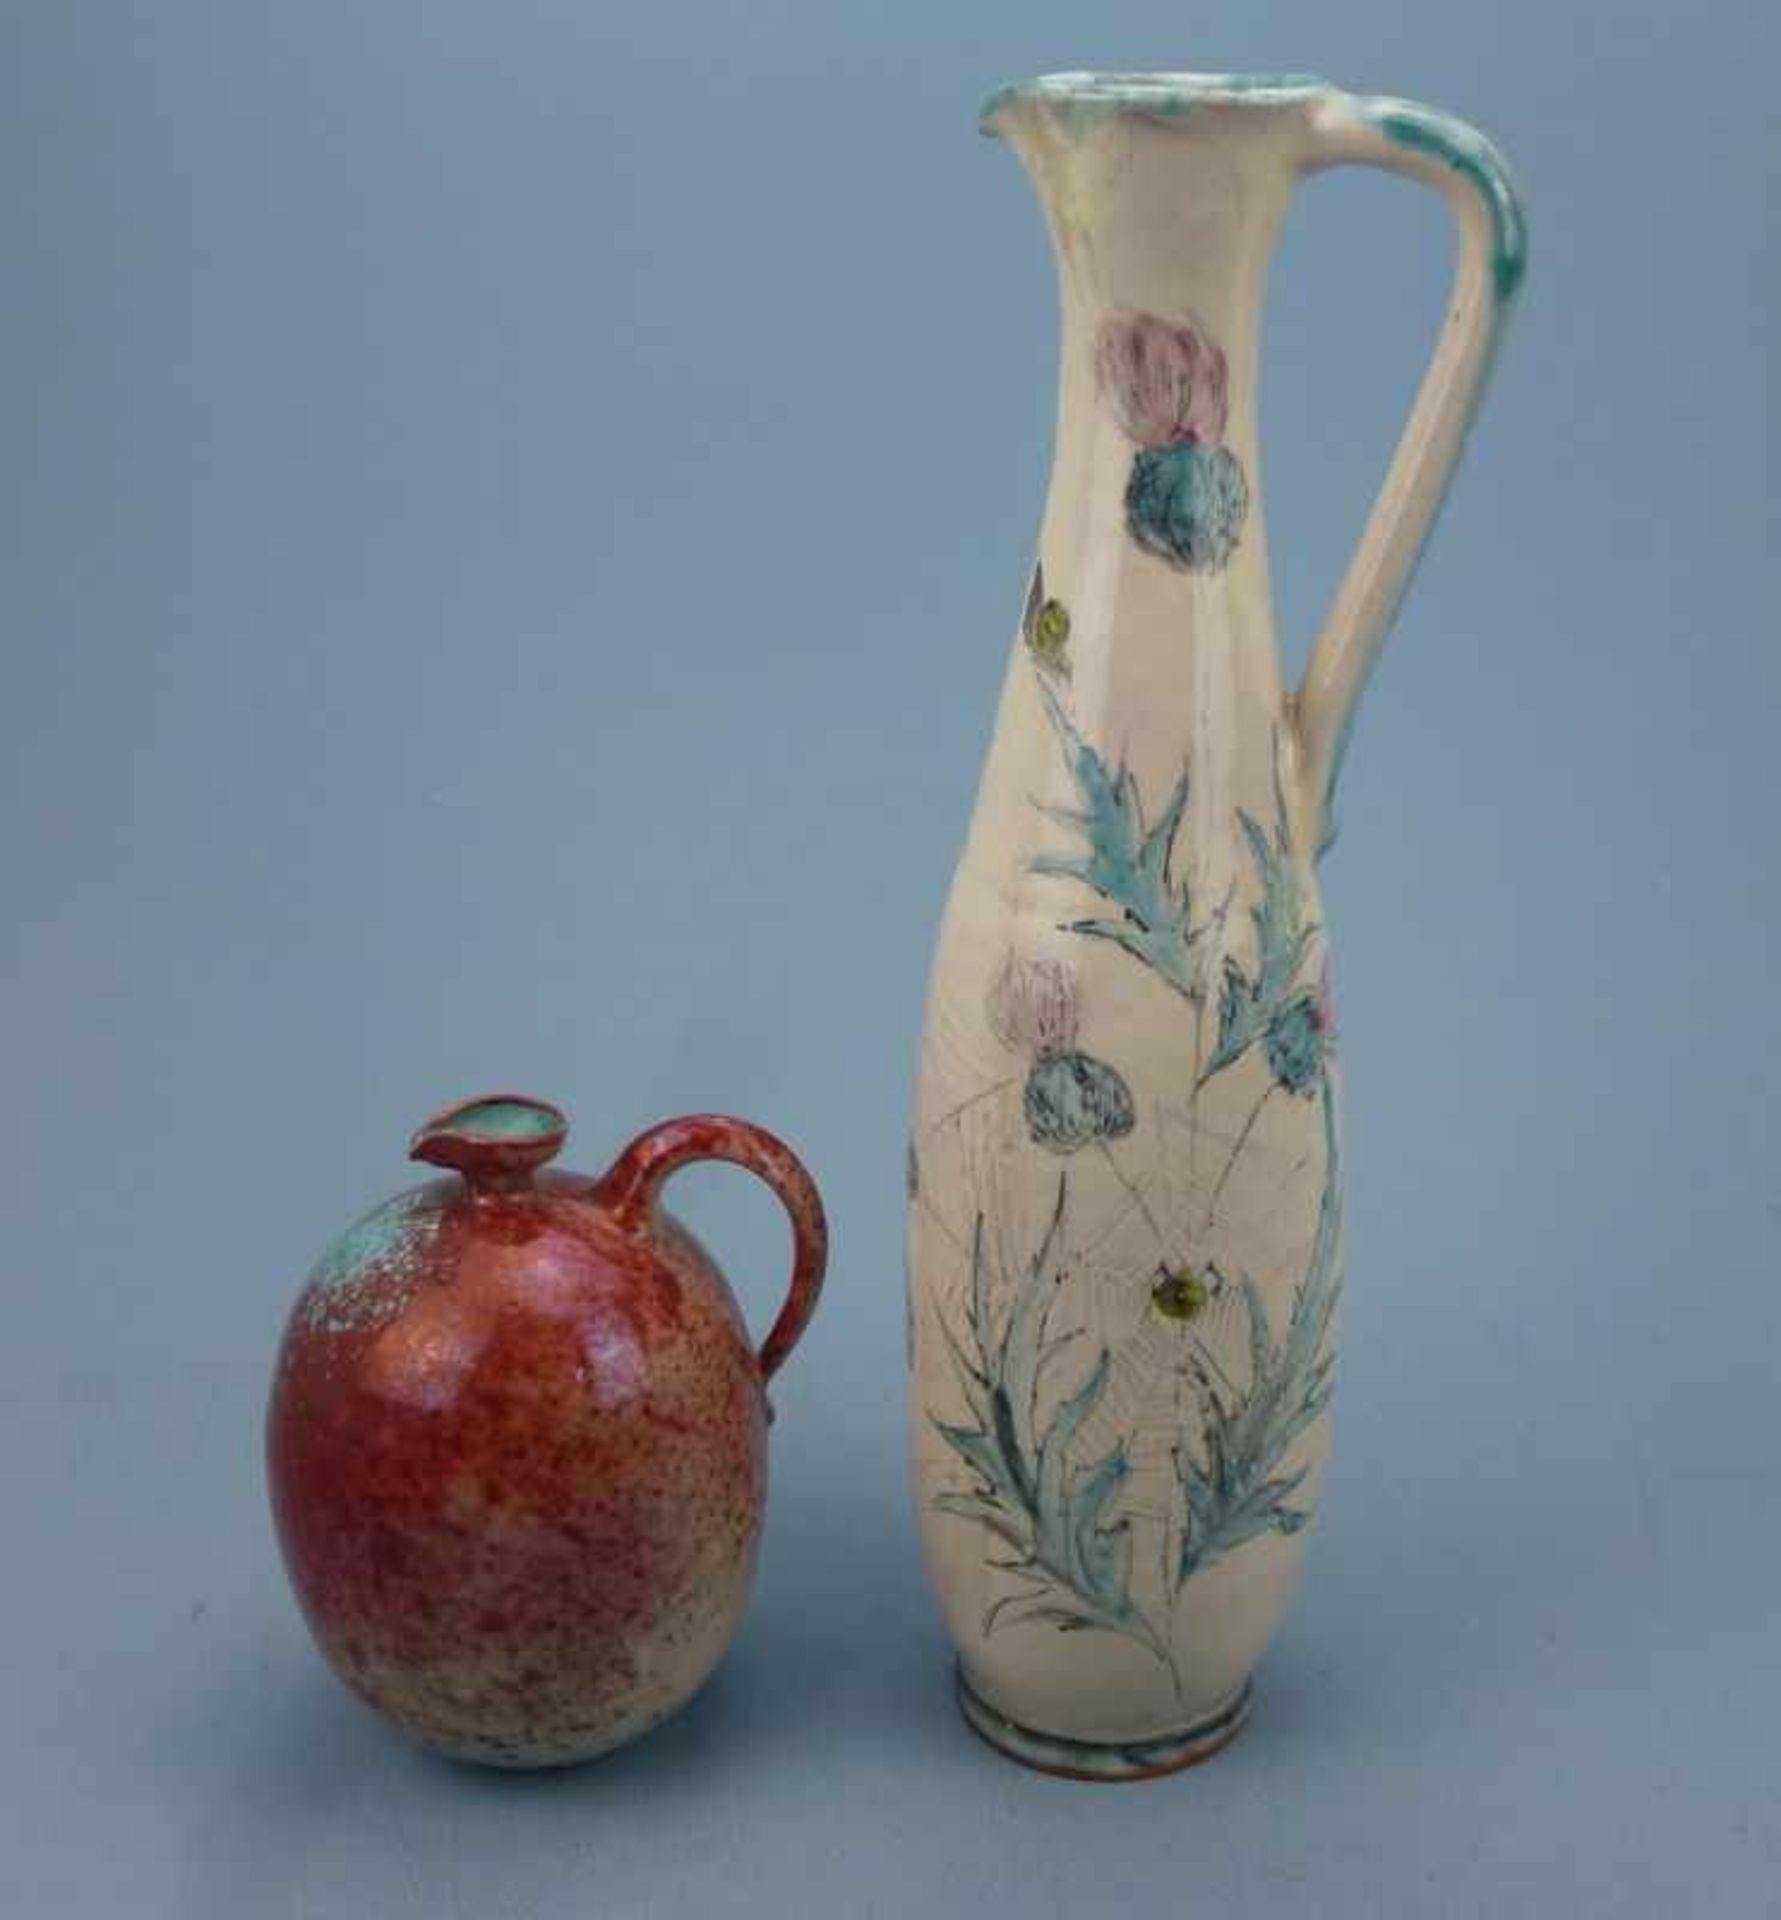 2 Vasen, 1950er Jahre roter Scherben, Distel- u. Spinnennetz-Dekor; beiger Scherben,Spritz-Dekor,